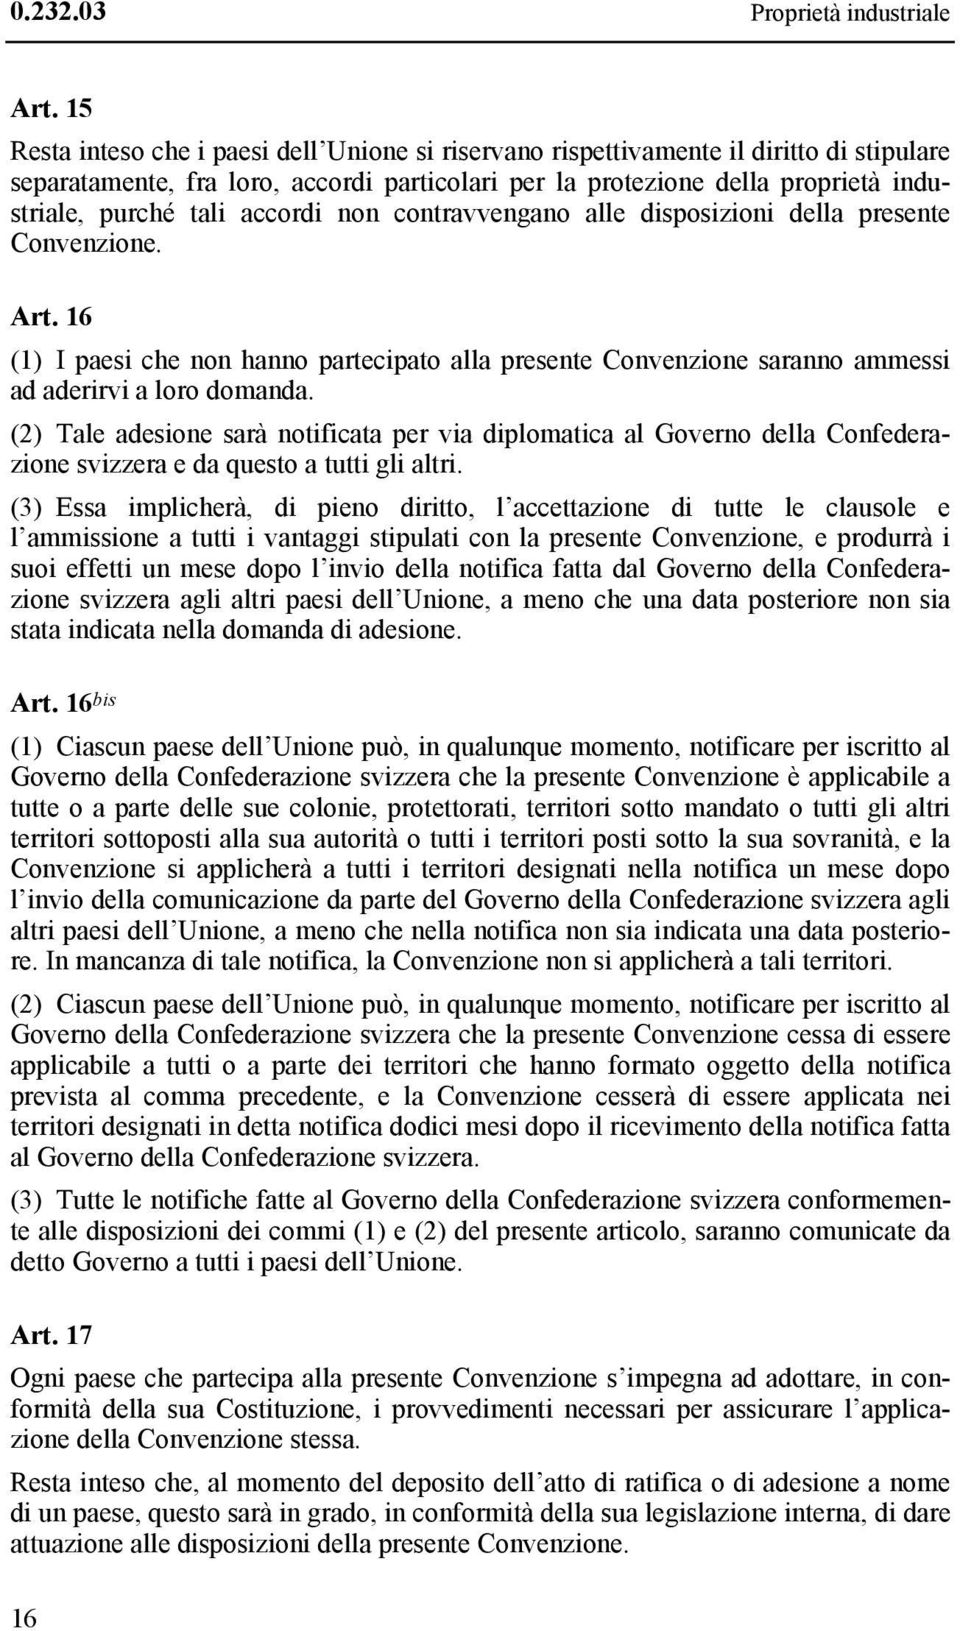 accordi non contravvengano alle disposizioni della presente Convenzione. Art. 16 (1) I paesi che non hanno partecipato alla presente Convenzione saranno ammessi ad aderirvi a loro domanda.